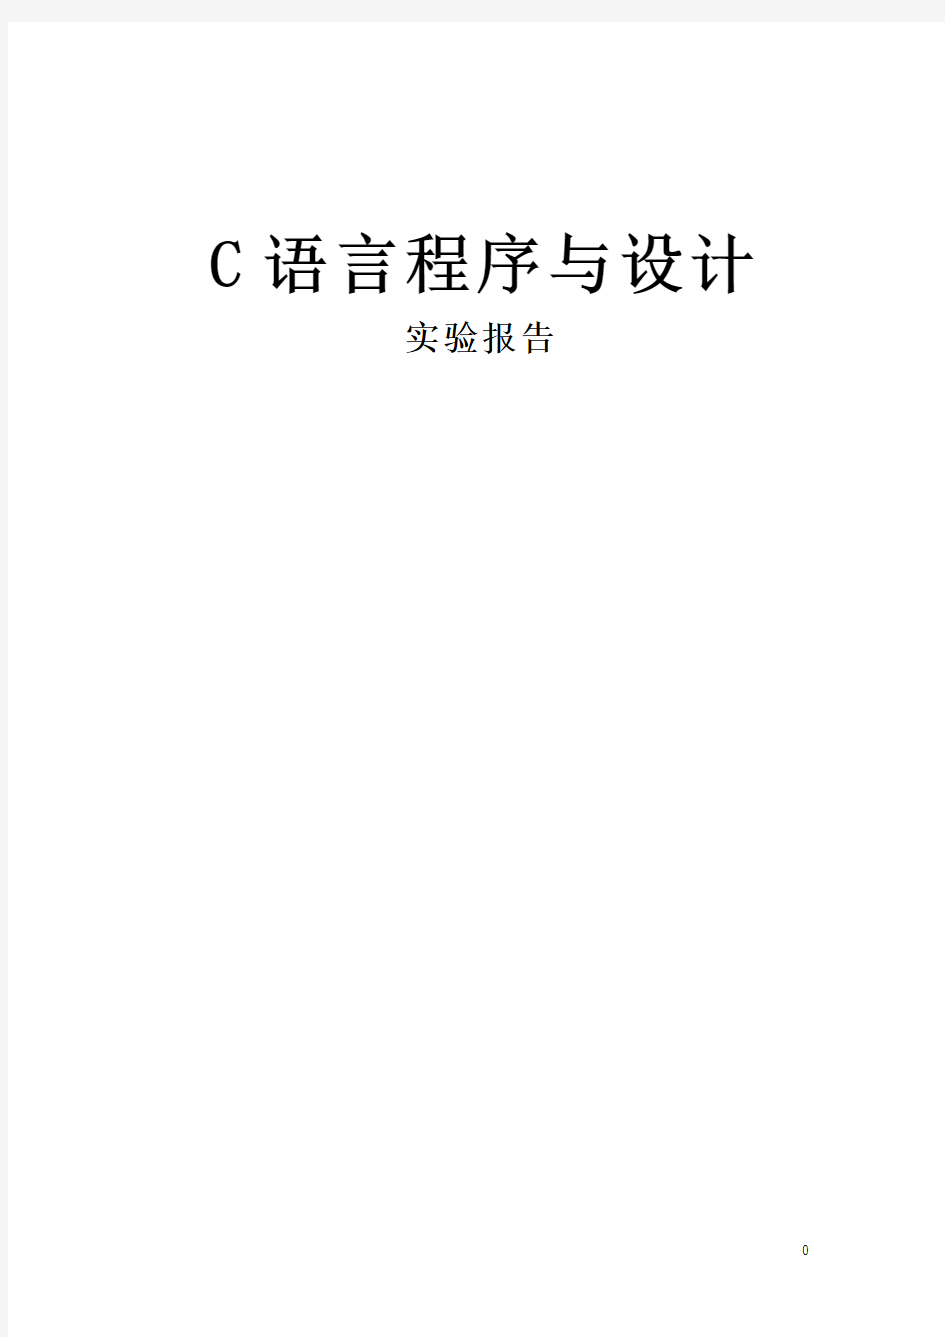 重庆邮电大学_c语言实验报告